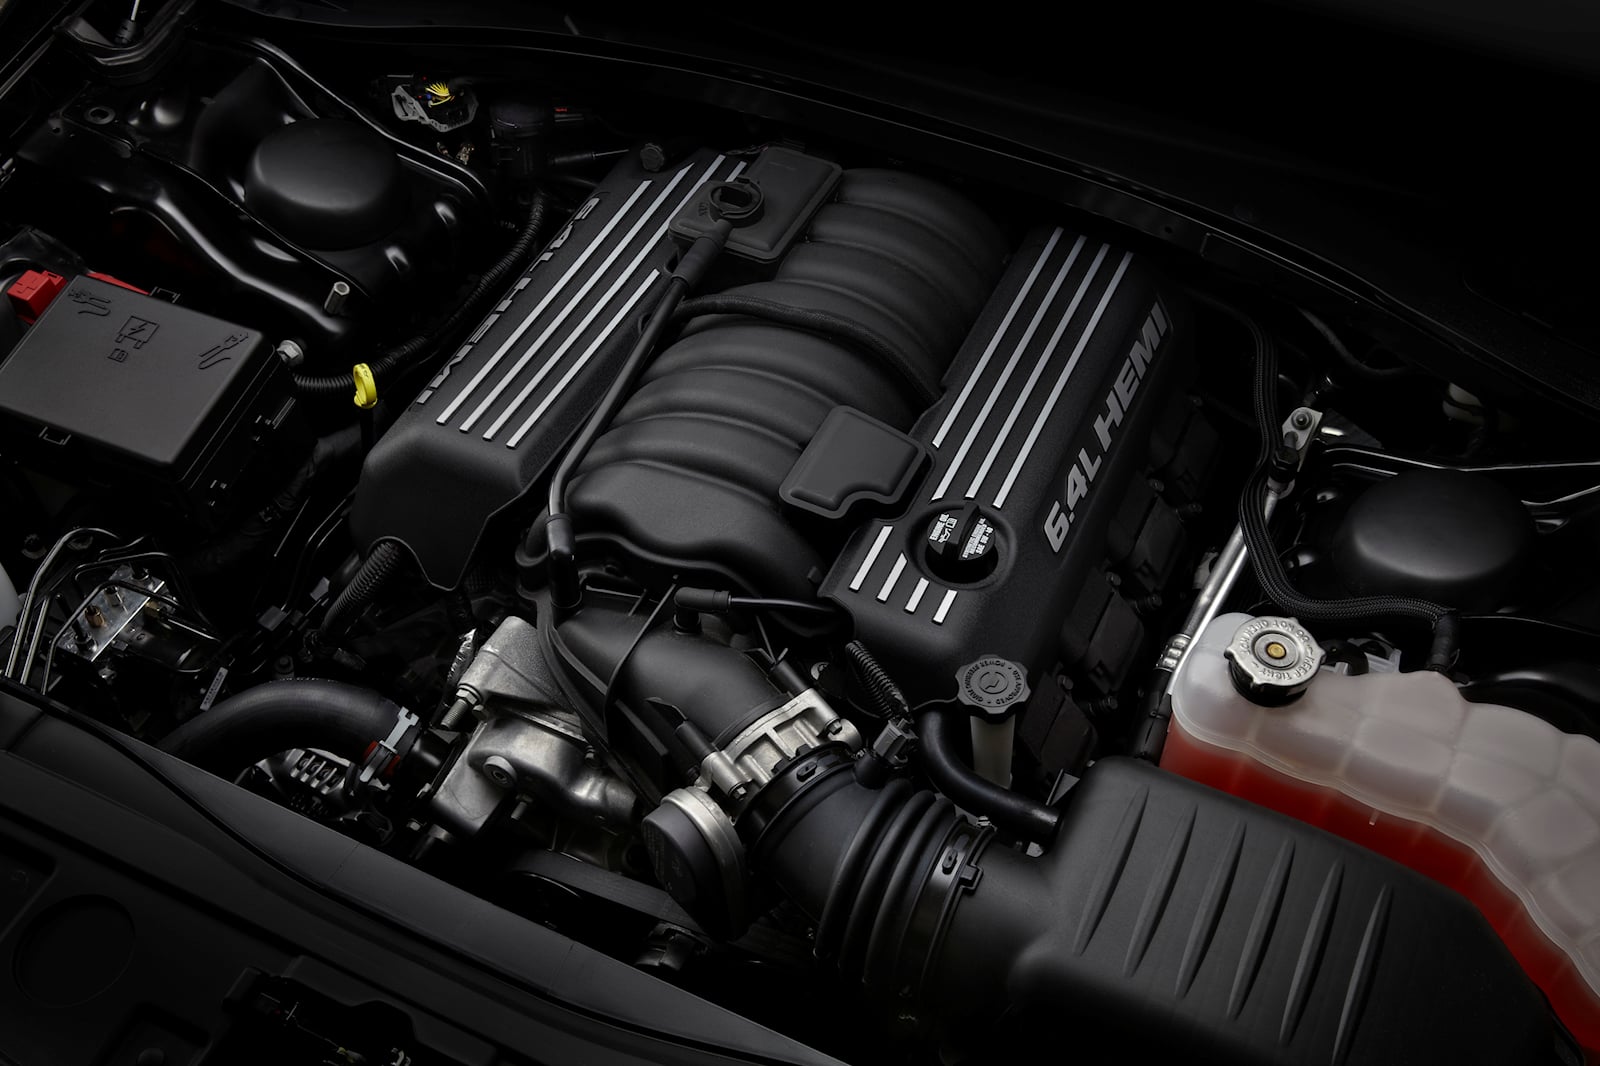 Многие фанаты надеются на трансмиссию Hellcat, что означает 6,2-литровый двигатель V8 с наддувом мощностью 717 л.с. и 880 Нм крутящего момента. 